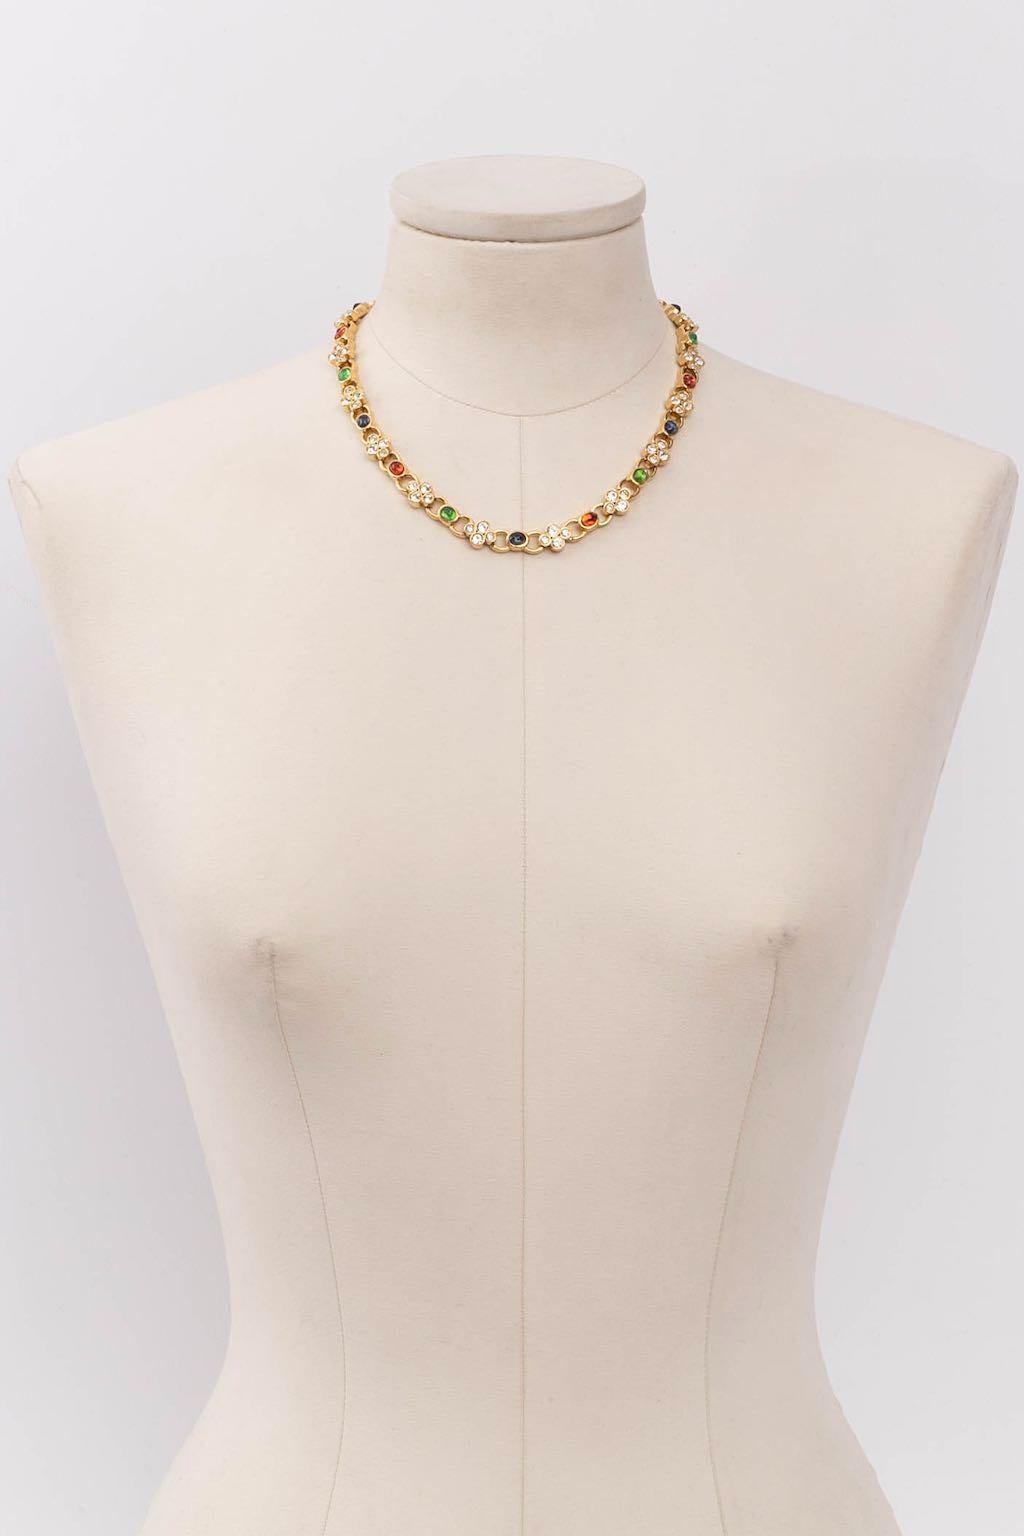 Carven - Halsband aus vergoldetem Metall, Glaspaste und Strasssteinen.

Zusätzliche Informationen: 
Abmessungen: Länge: 43,5 cm (17.12